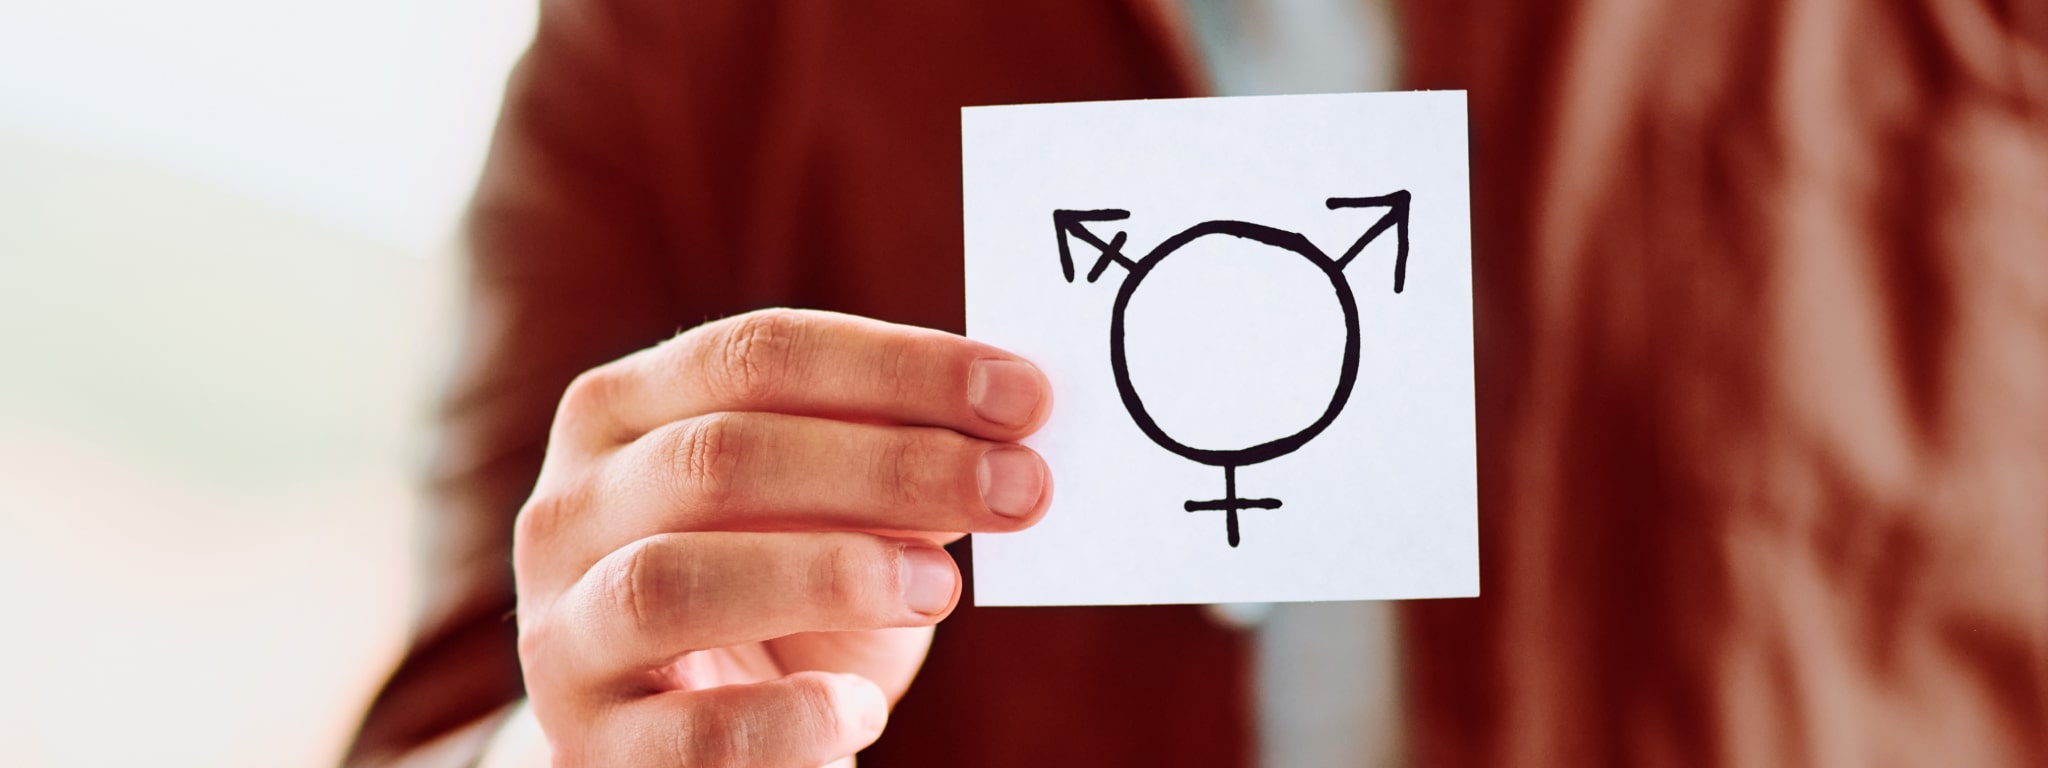 Identidade de Gênero: o que é e quais os tipos (trans, cis, não-binário) -  Enciclopédia Significados